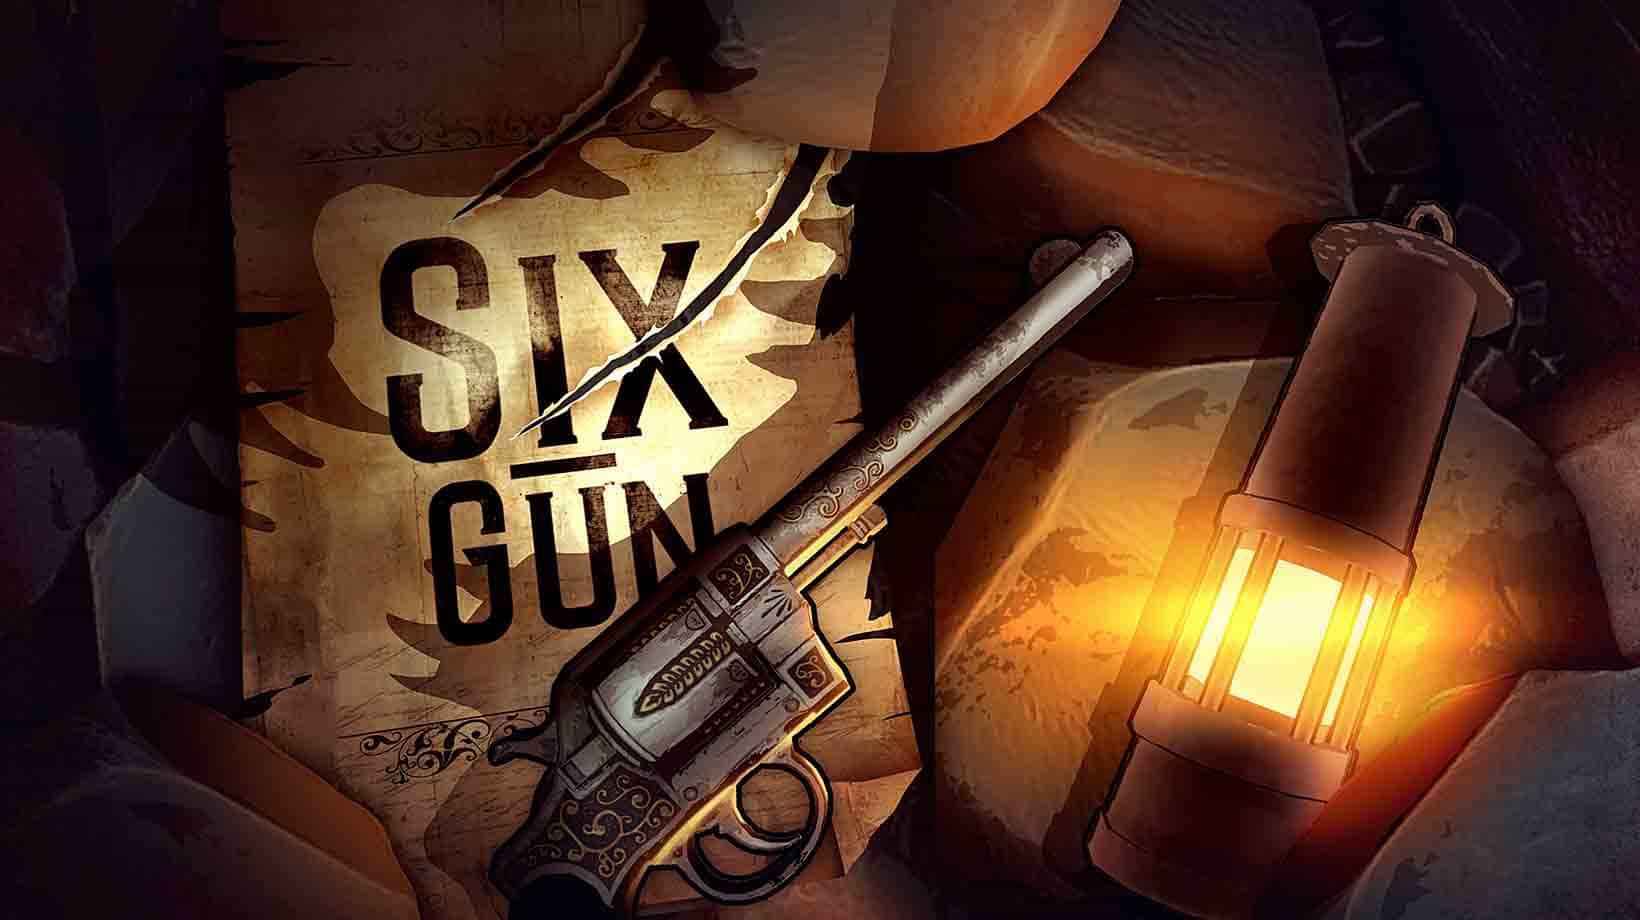 Six-gun